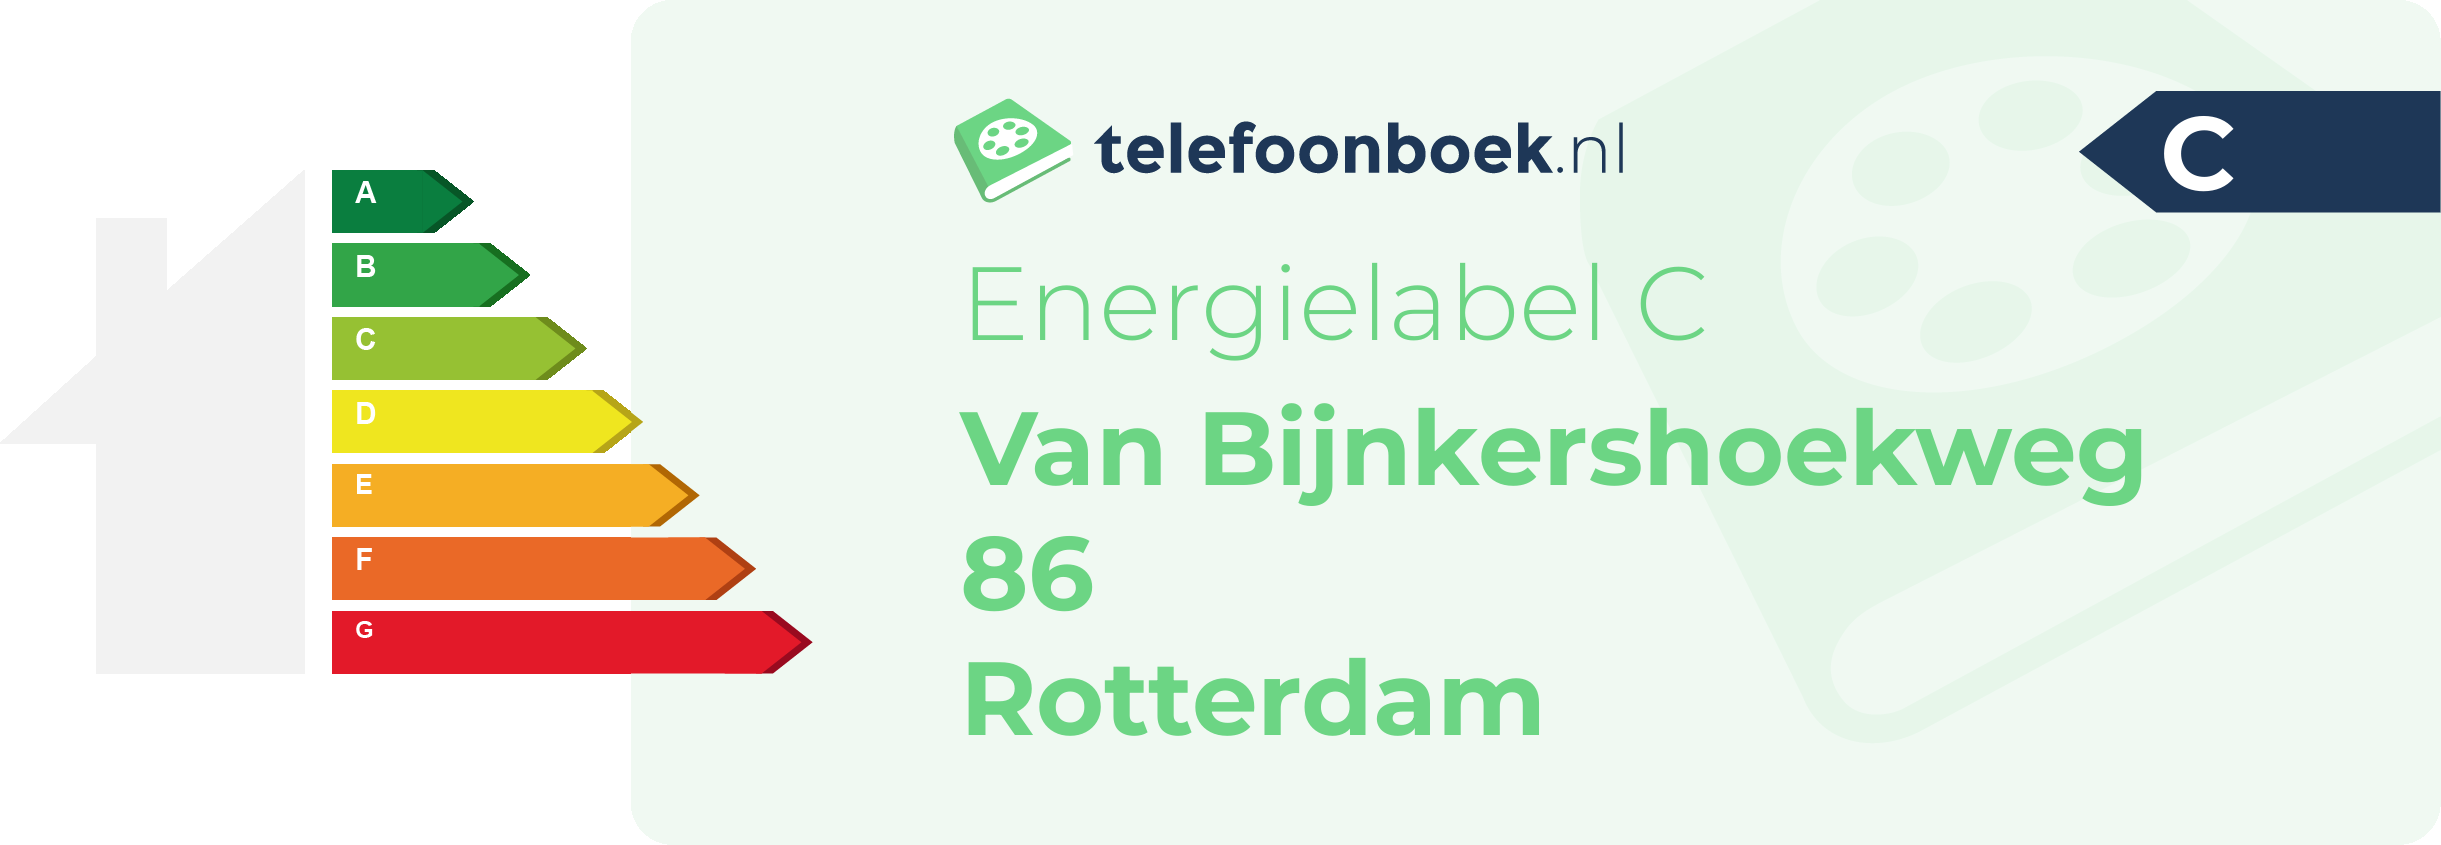 Energielabel Van Bijnkershoekweg 86 Rotterdam